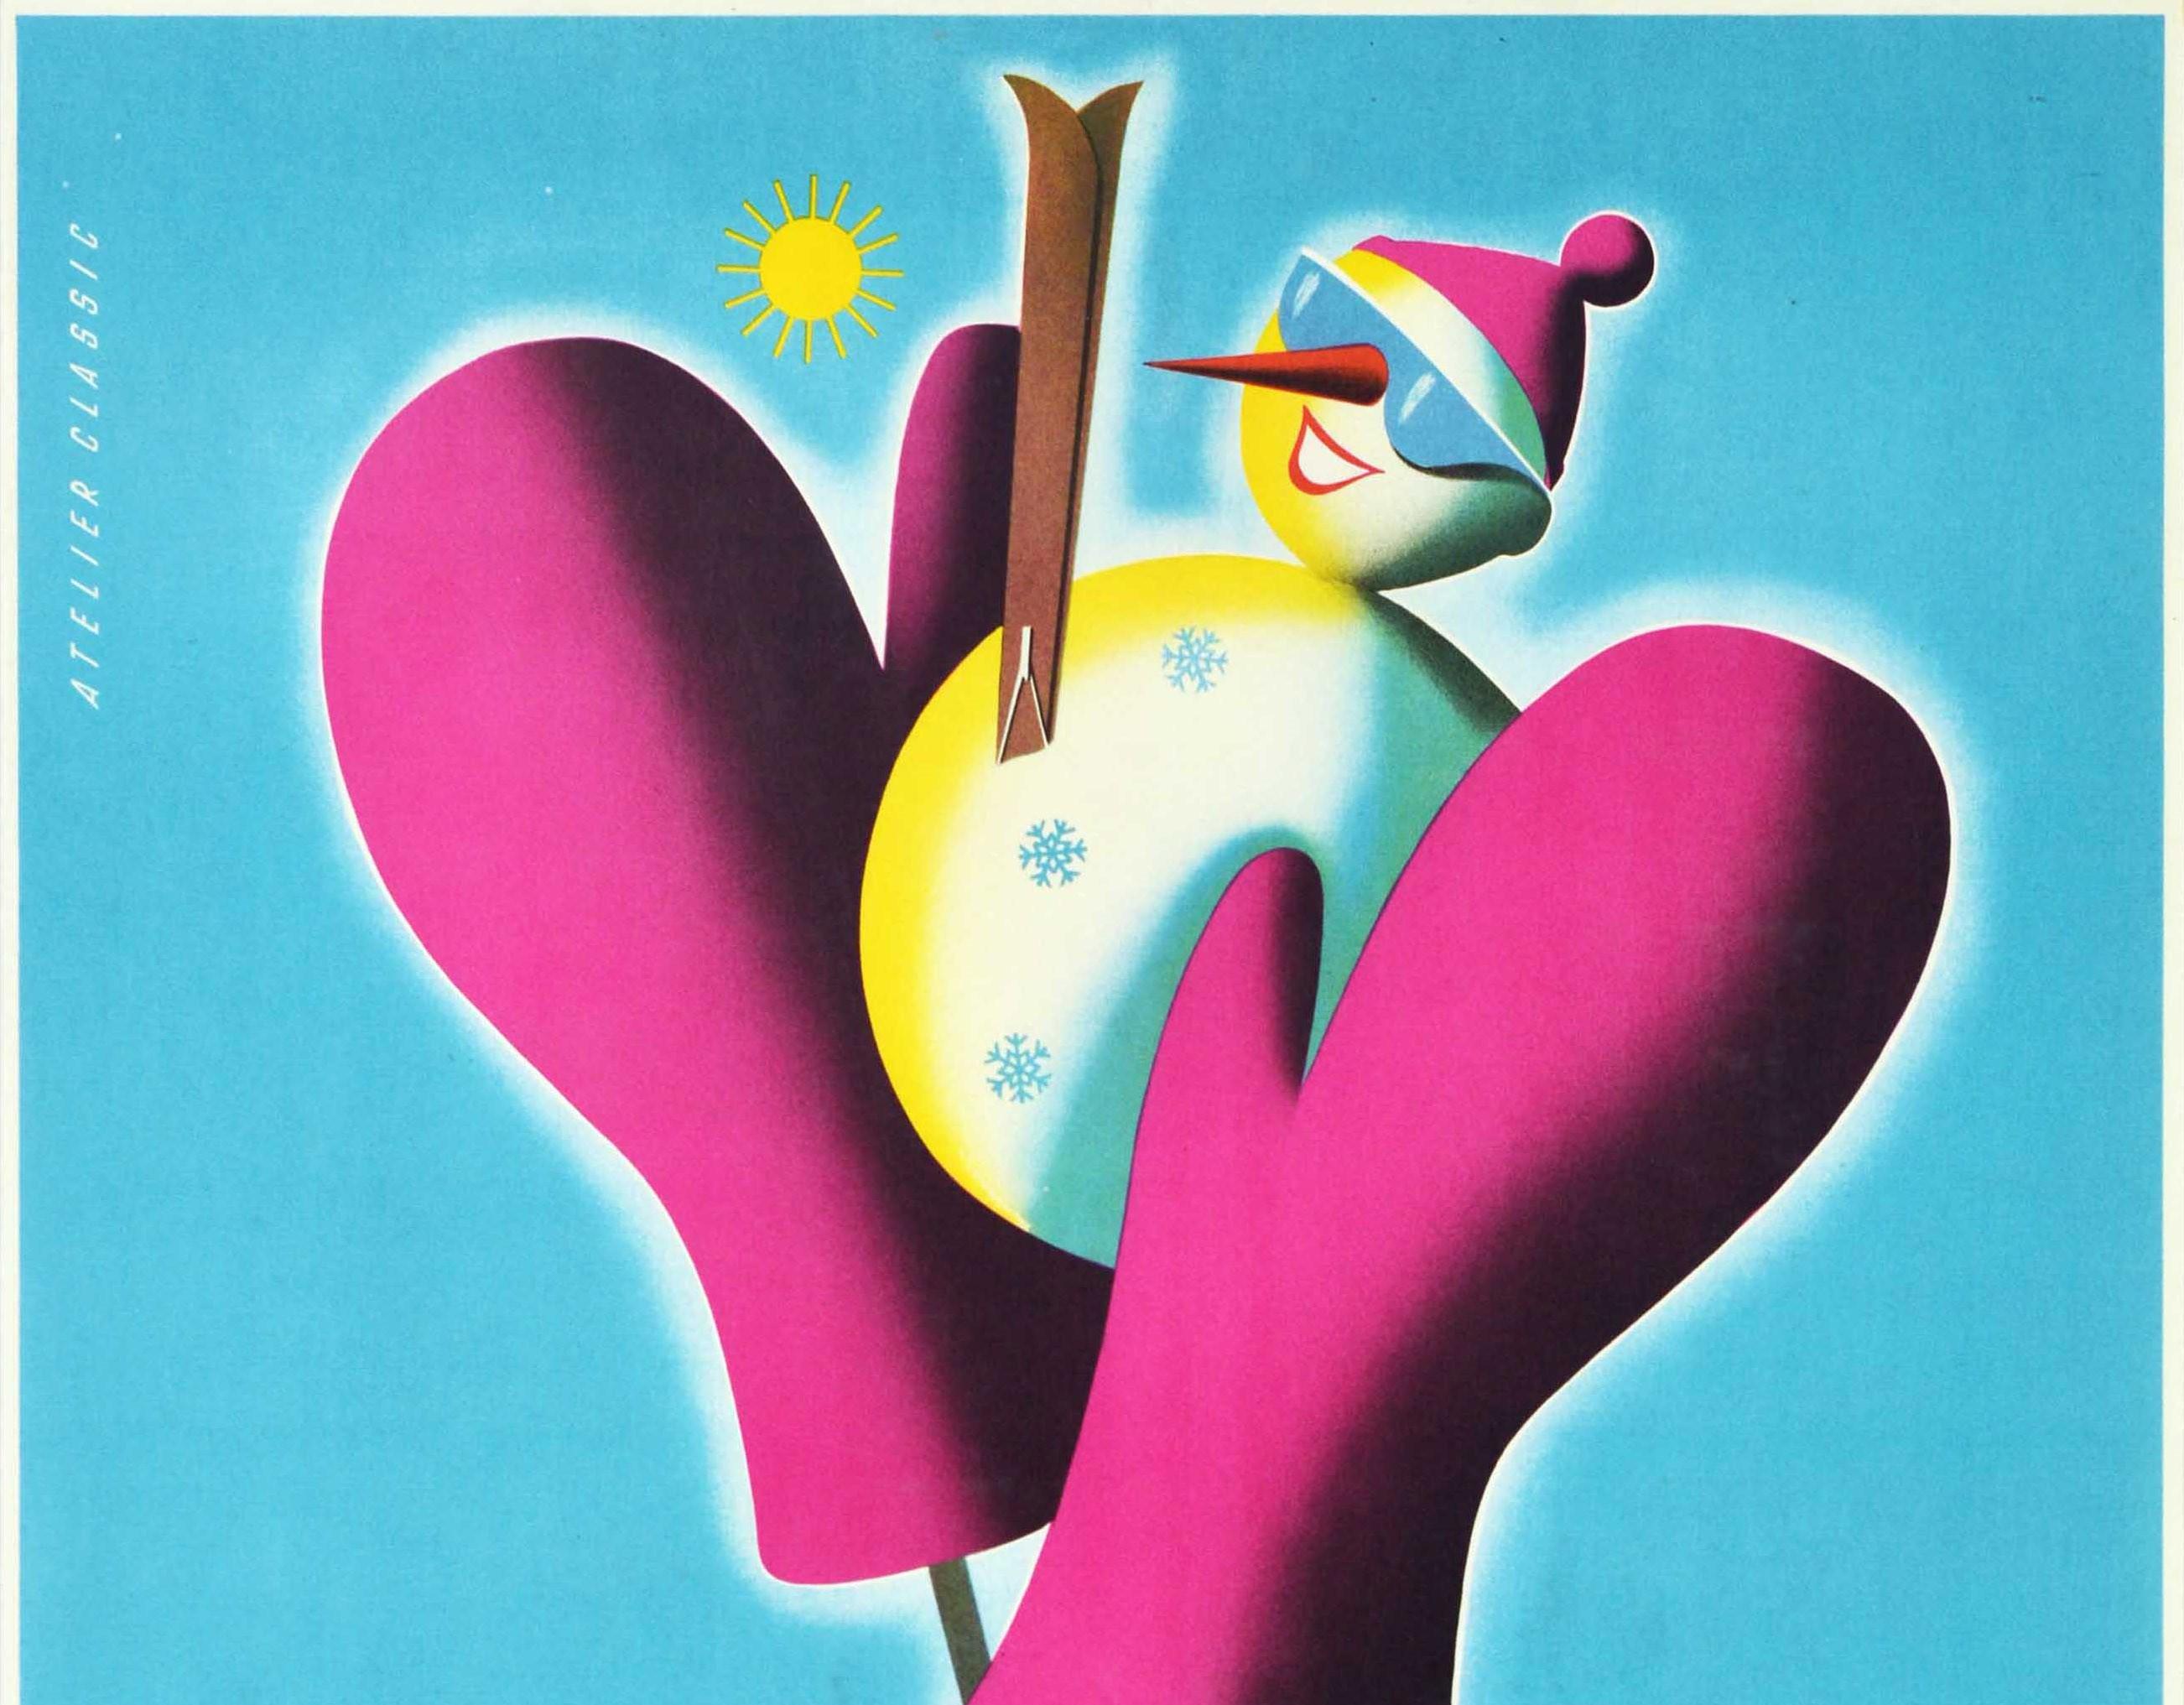 Original Vintage Winterreiseplakat für Otztal Tirol Österreich mit einer lustigen Ski-Illustration von rosa Fäustlinge auf Skistöcke halten einen Schneemann mit dem Titel in einem Band um sie herum gebunden, die lächelnde Schneemann trägt eine